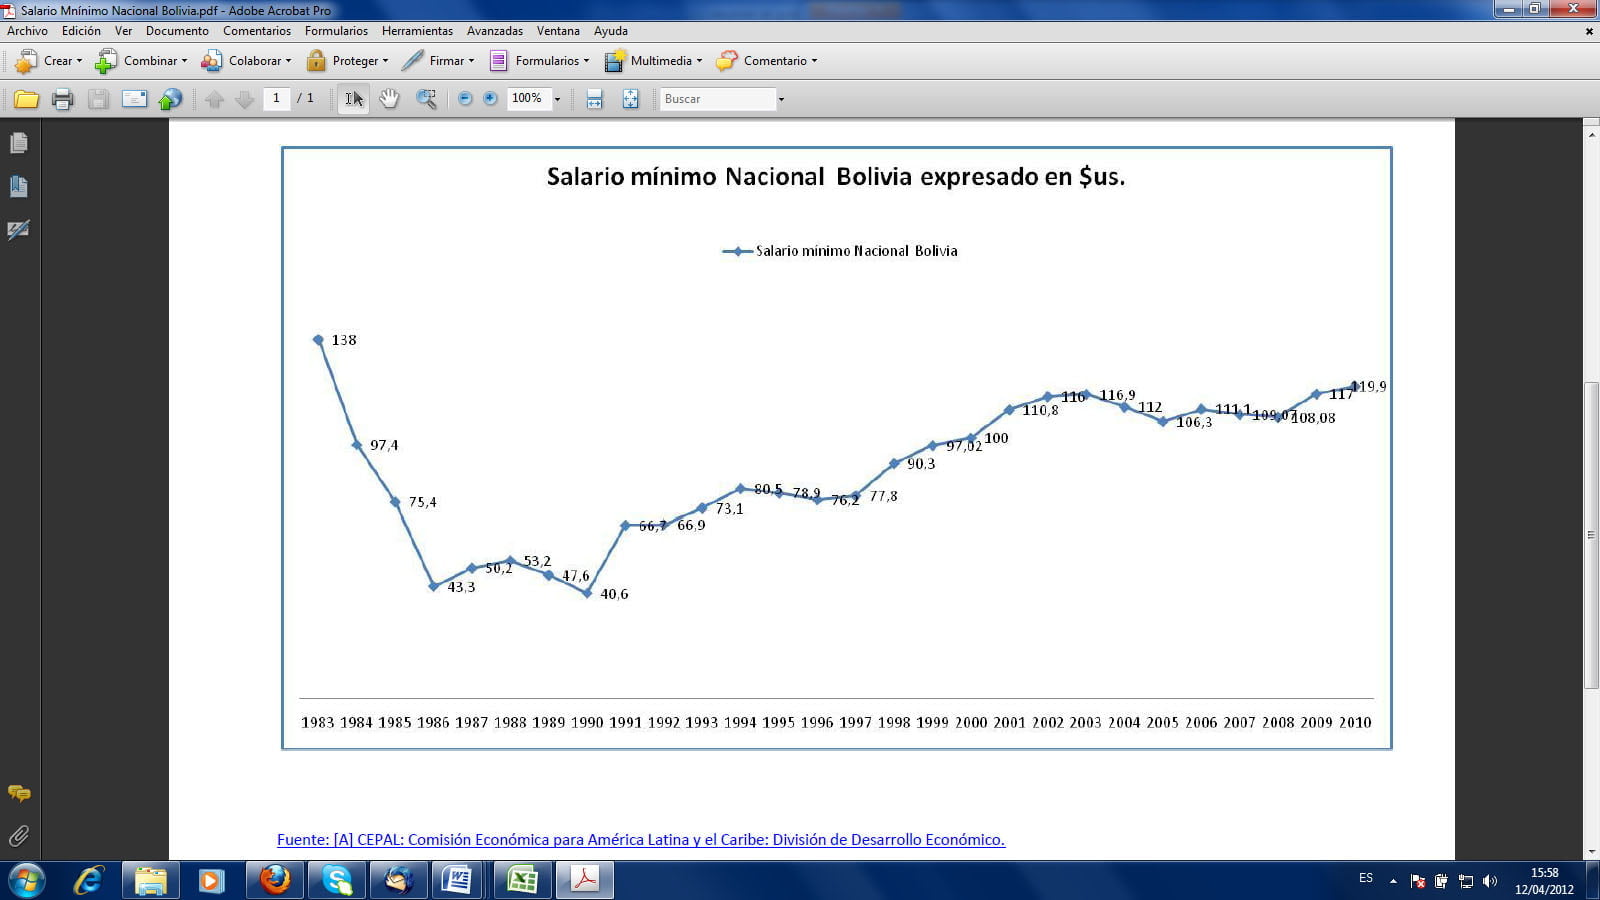 Salario mínimo de Bolivia 1983-2010